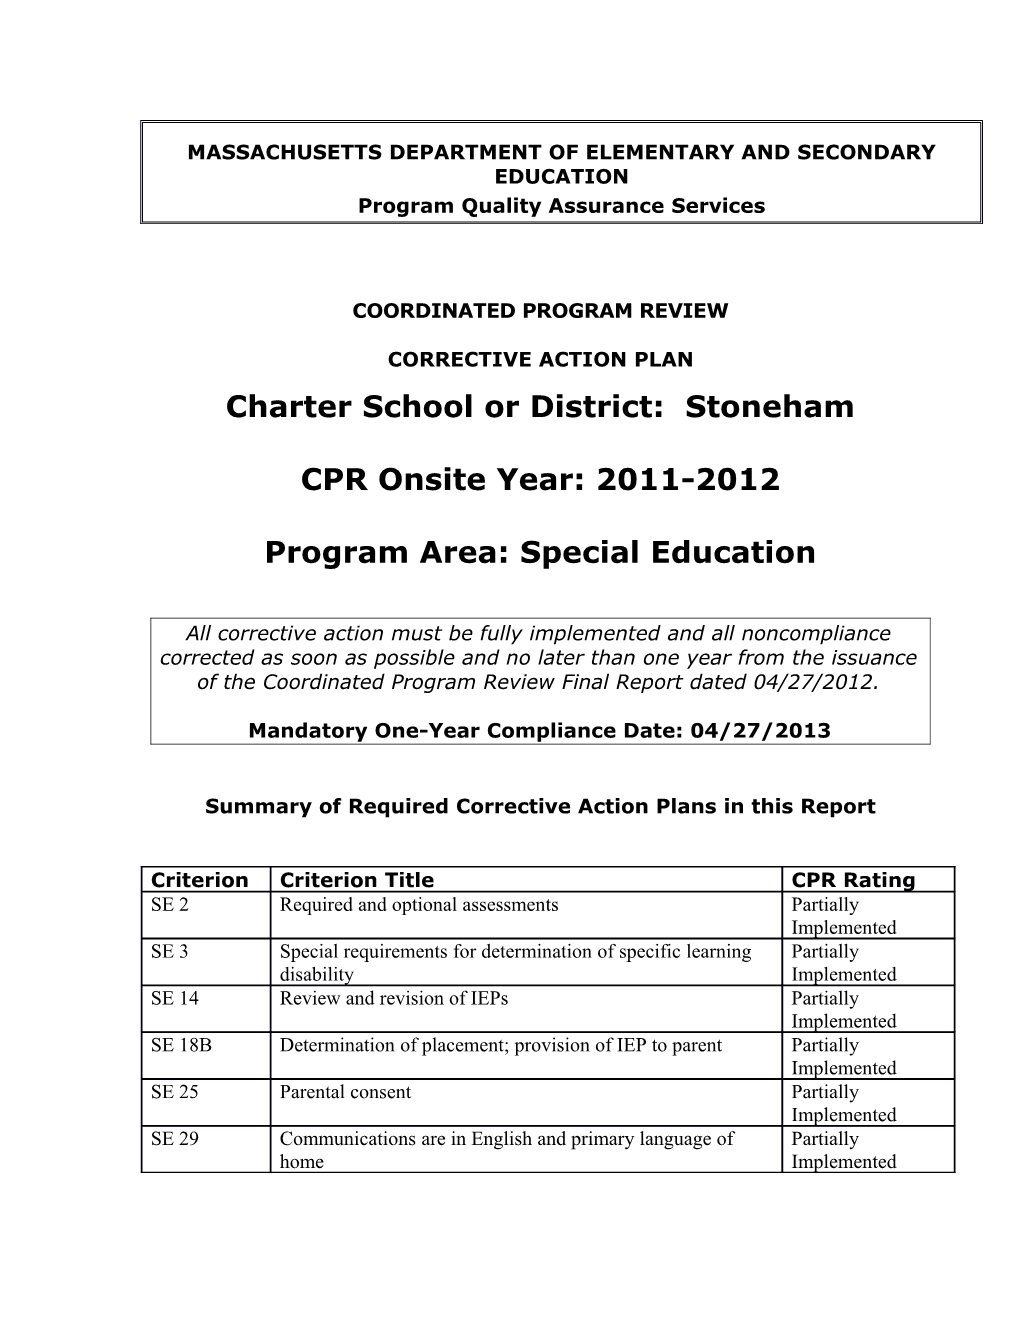 Stoneham Public Schools CAP 2012